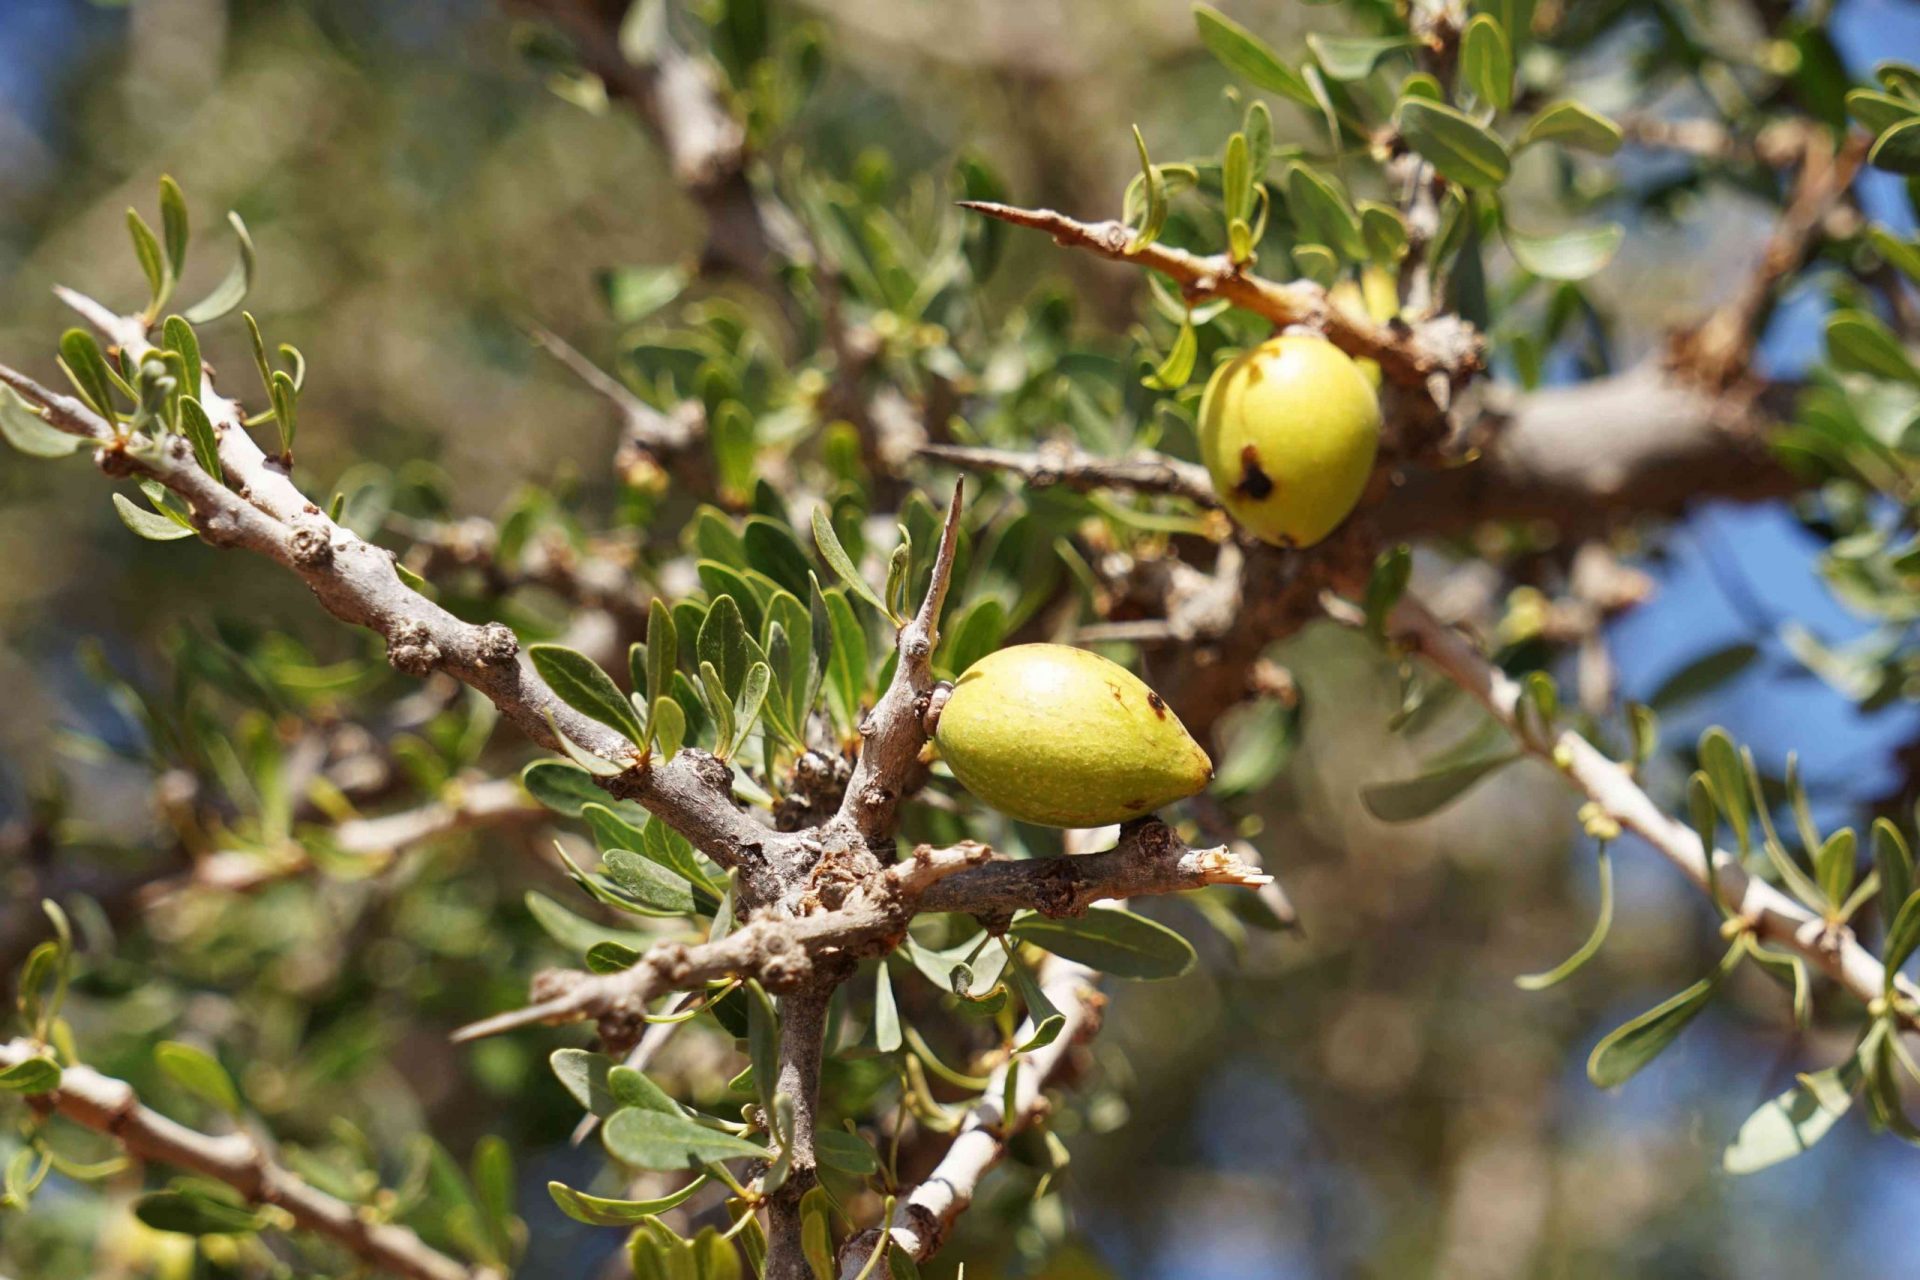 Detalle de la rama espinosa del árbol de argán (Argania spinosa) con el fruto maduro, utilizado para el costoso y raro aceite cosmético